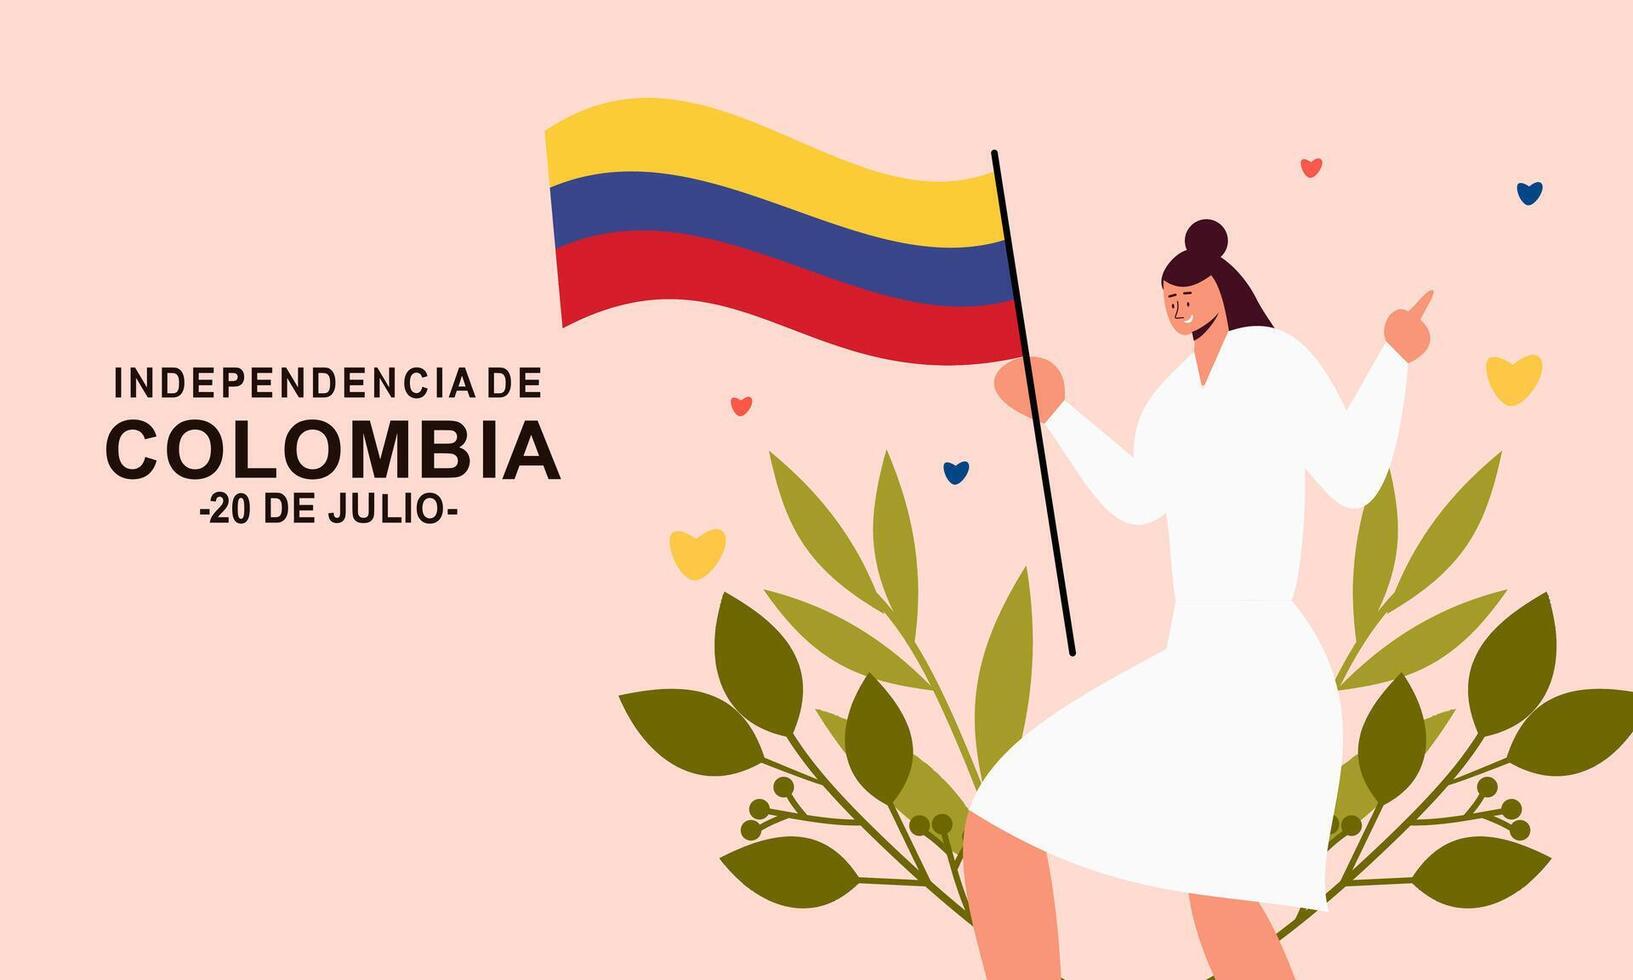 colombianska oberoende dag firande. juli 20. vektor illustration